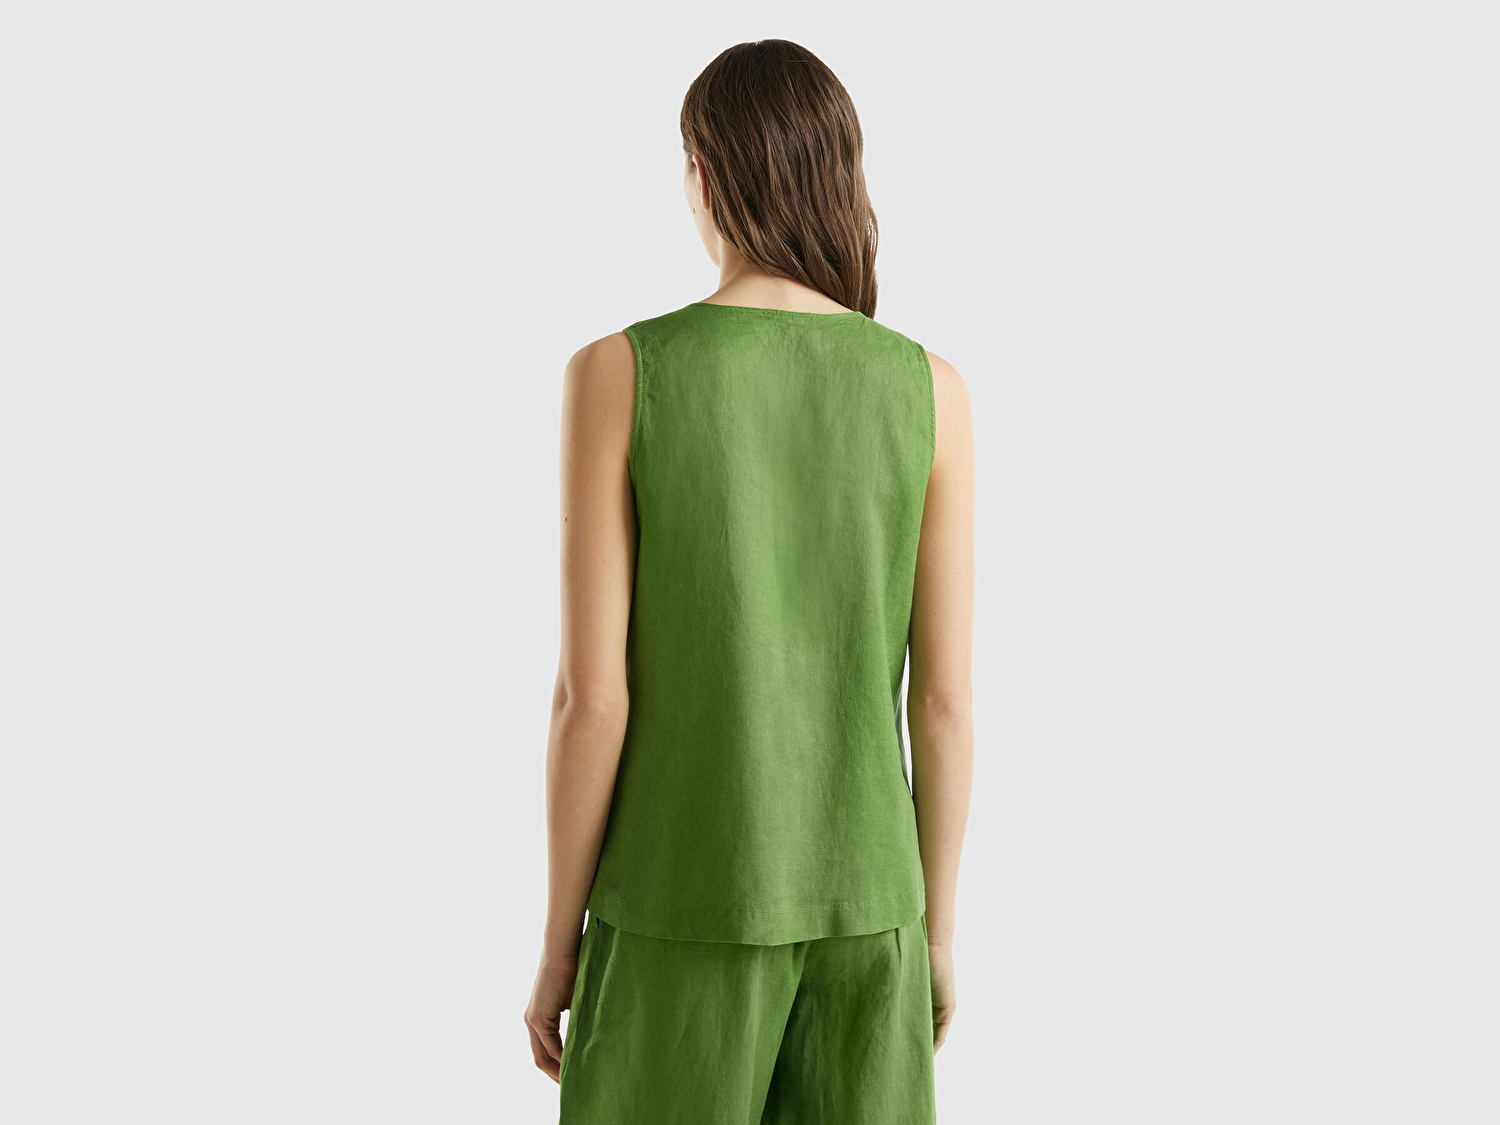 Benetton Kadın Soluk Yeşil %100 Keten V Yaka Kolsuz Geniş Kesim Bluz